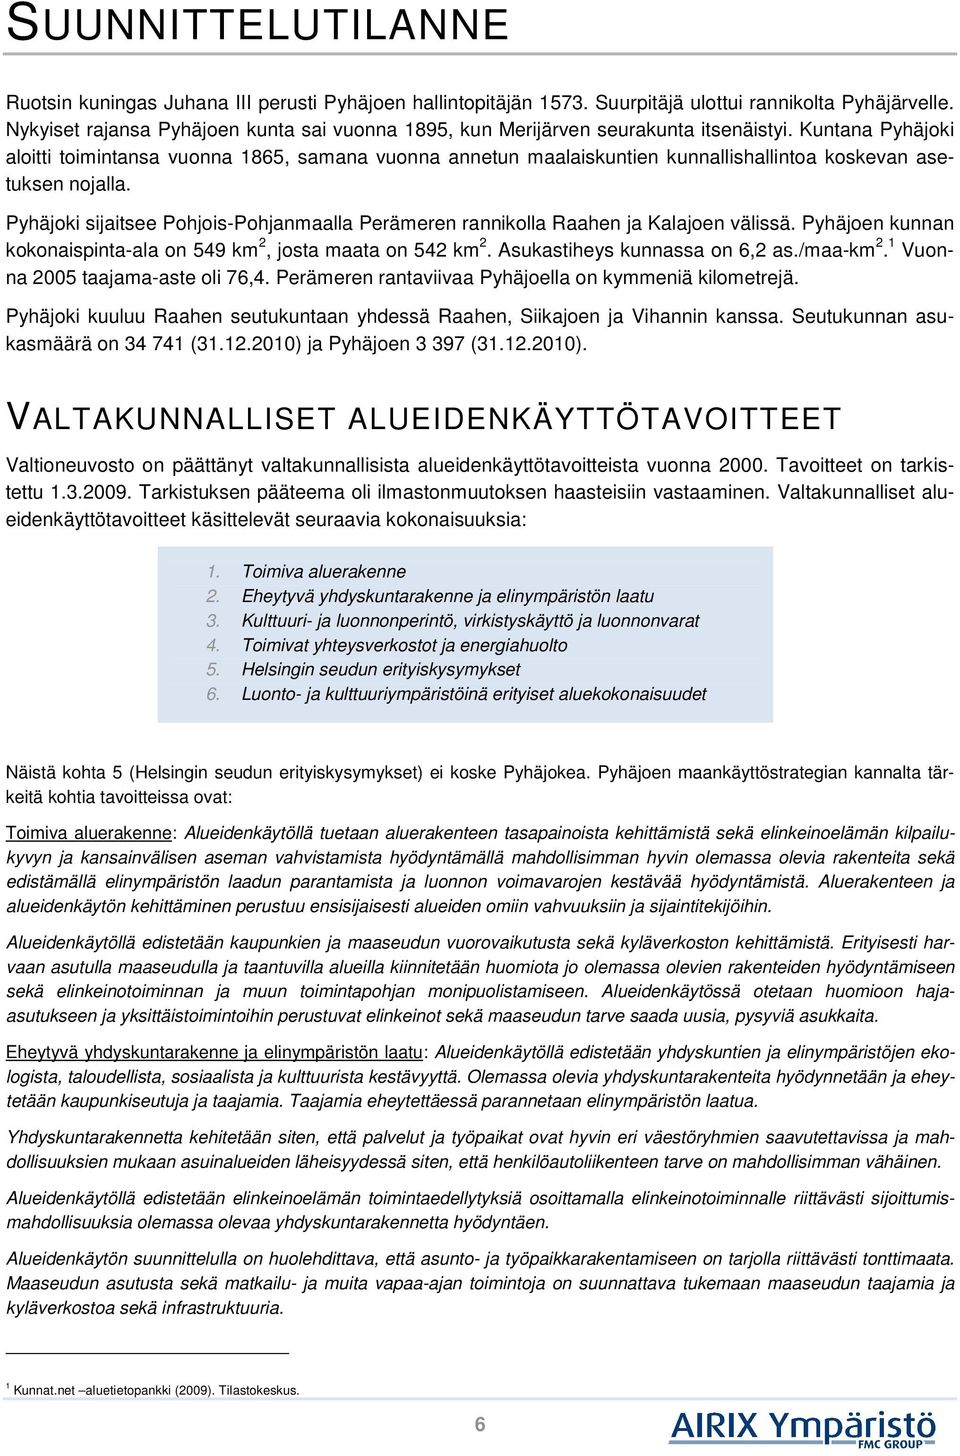 Kuntana Pyhäjoki aloitti toimintansa vuonna 1865, samana vuonna annetun maalaiskuntien kunnallishallintoa koskevan asetuksen nojalla.